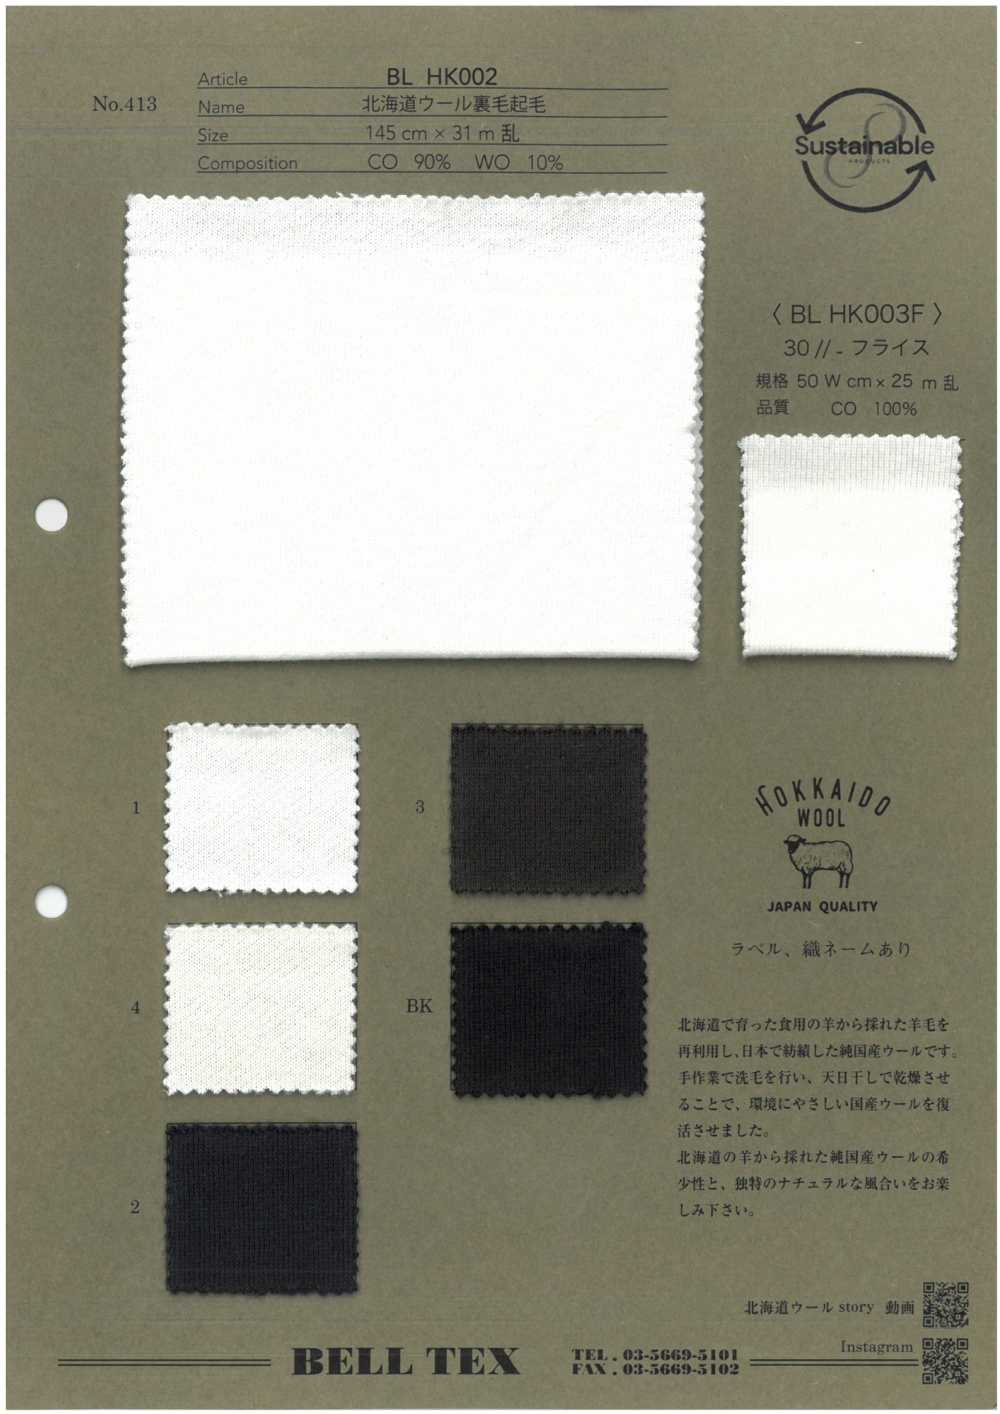 BLHK002 [Textile / Fabric] Vertex